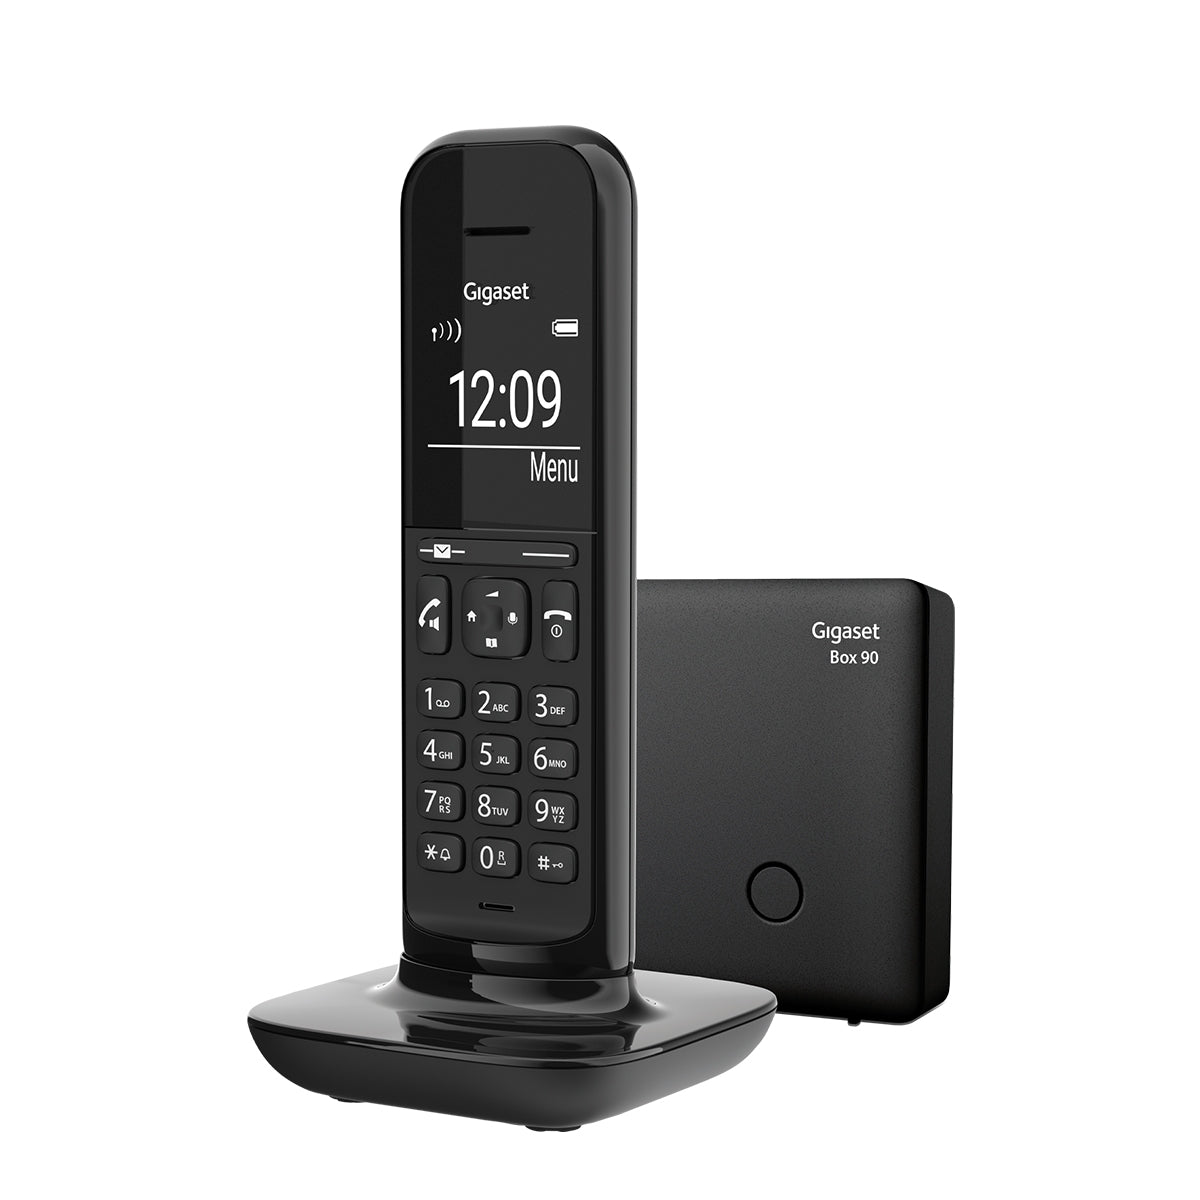 Image of Gigaset Hello Designer Cordless Phone - Black, Single Handset Without Answer Machine